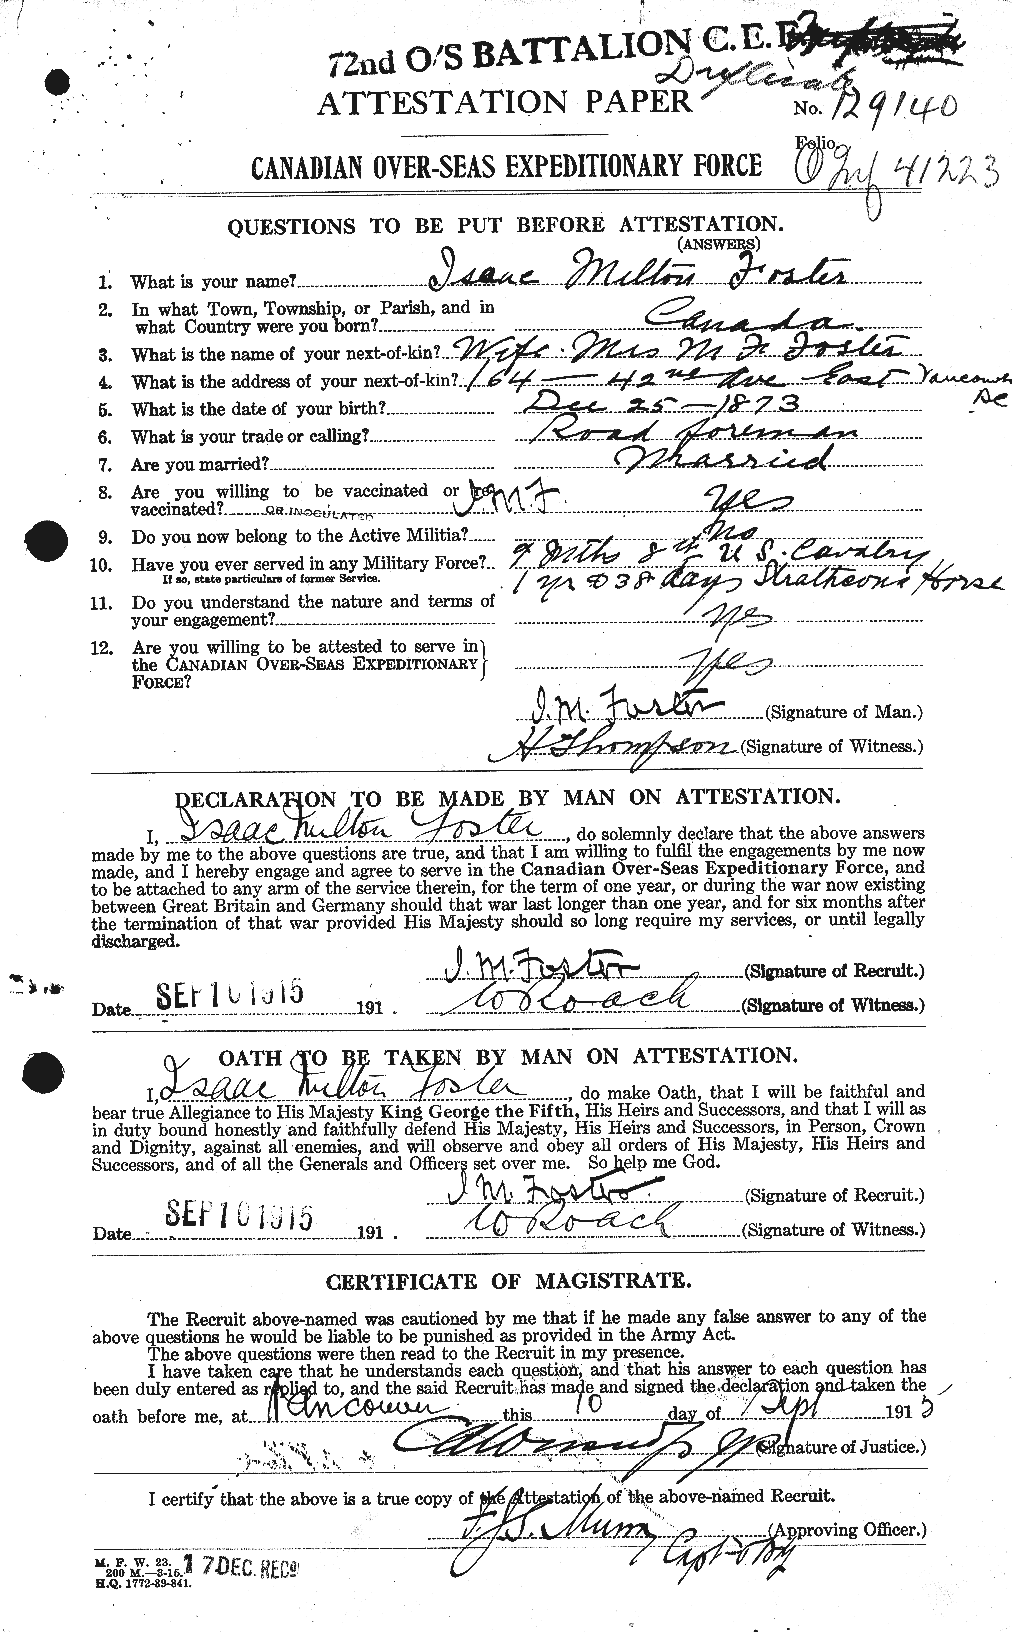 Dossiers du Personnel de la Première Guerre mondiale - CEC 333271a